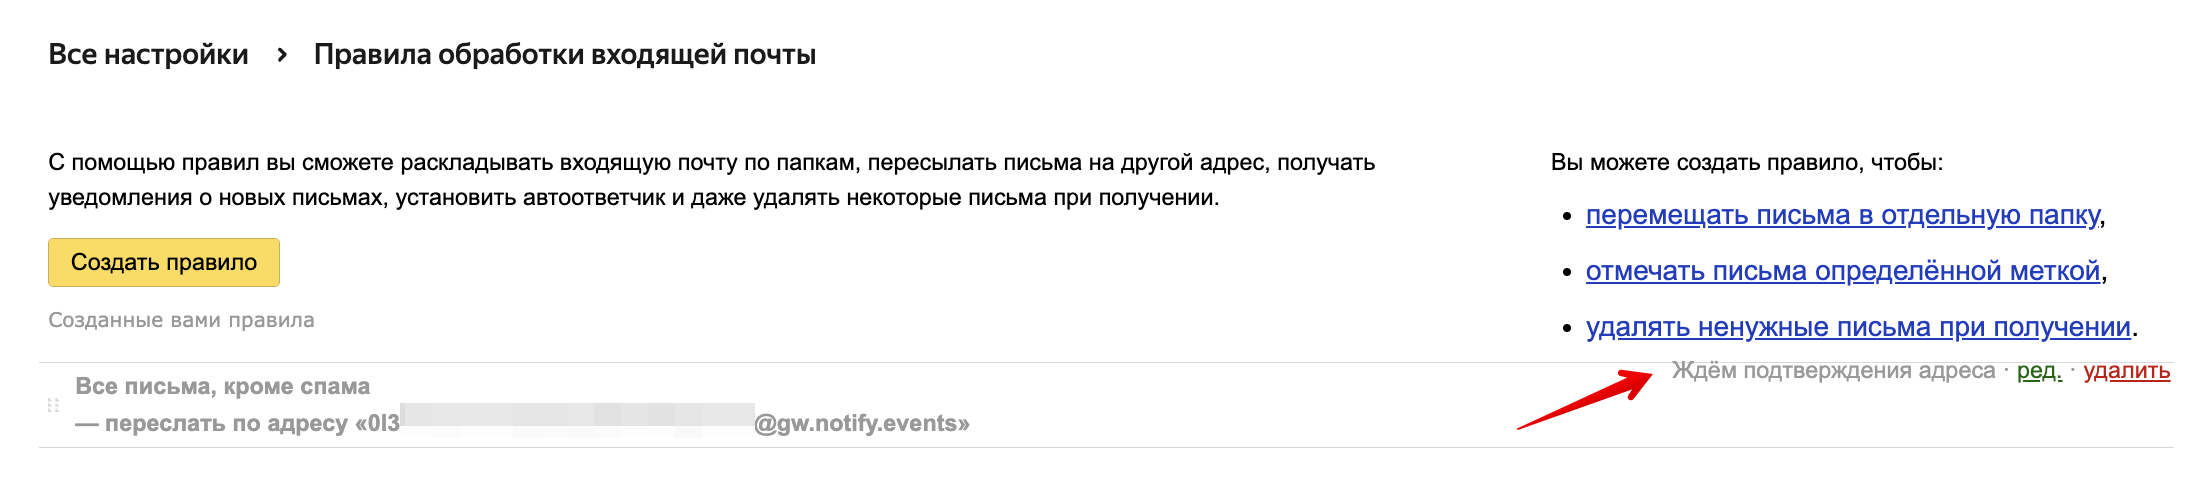 Яндекс Почта - подтверждение пересылки.png